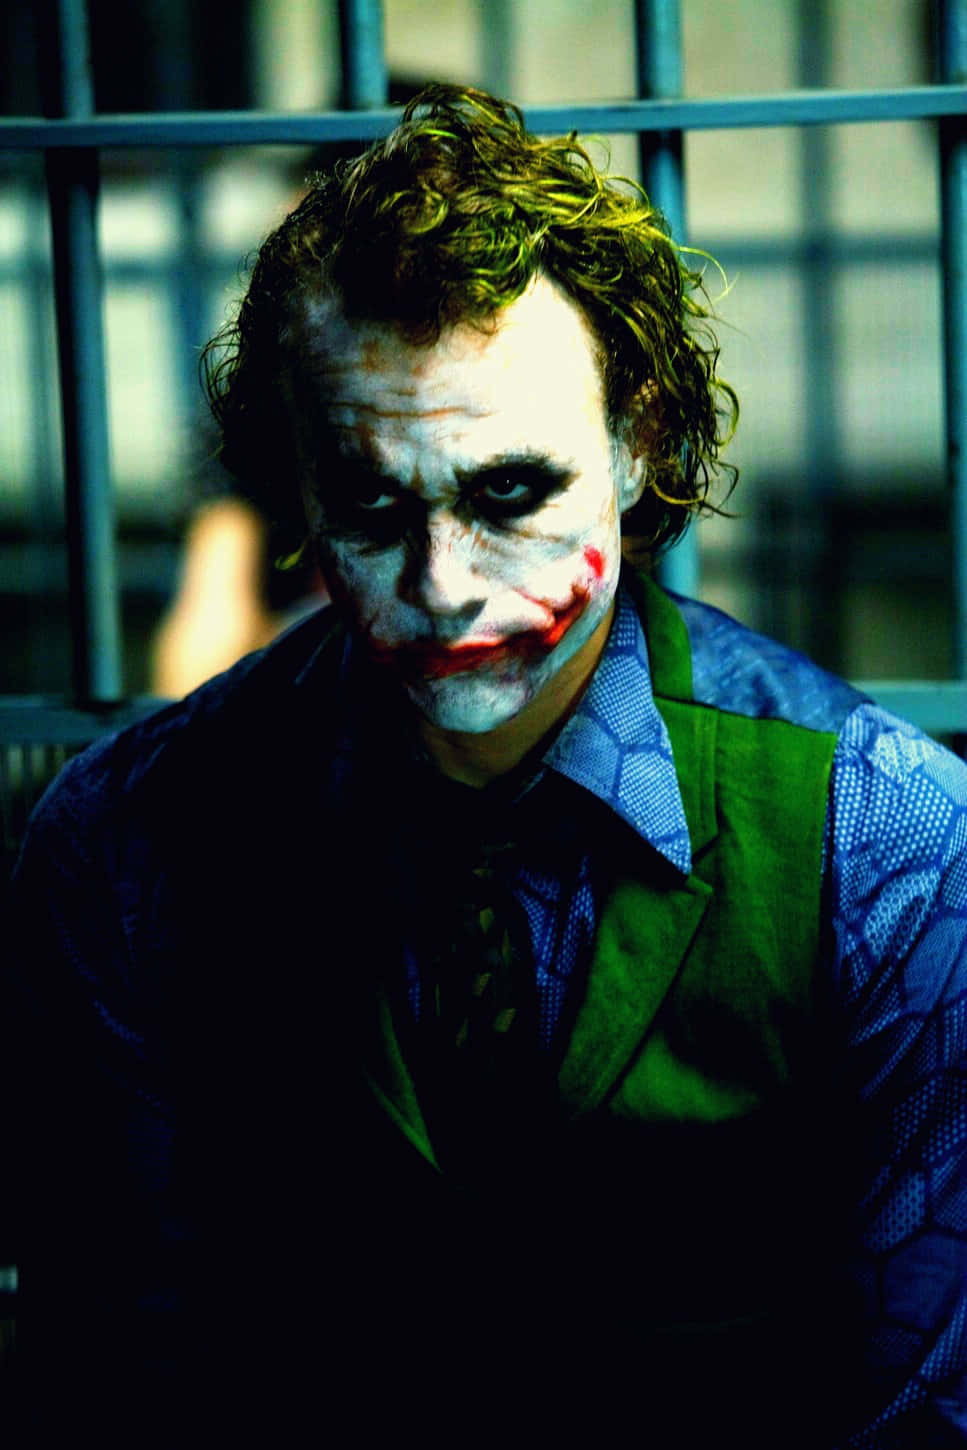 Jokerhintergrundbild - Joker-hintergrundbild